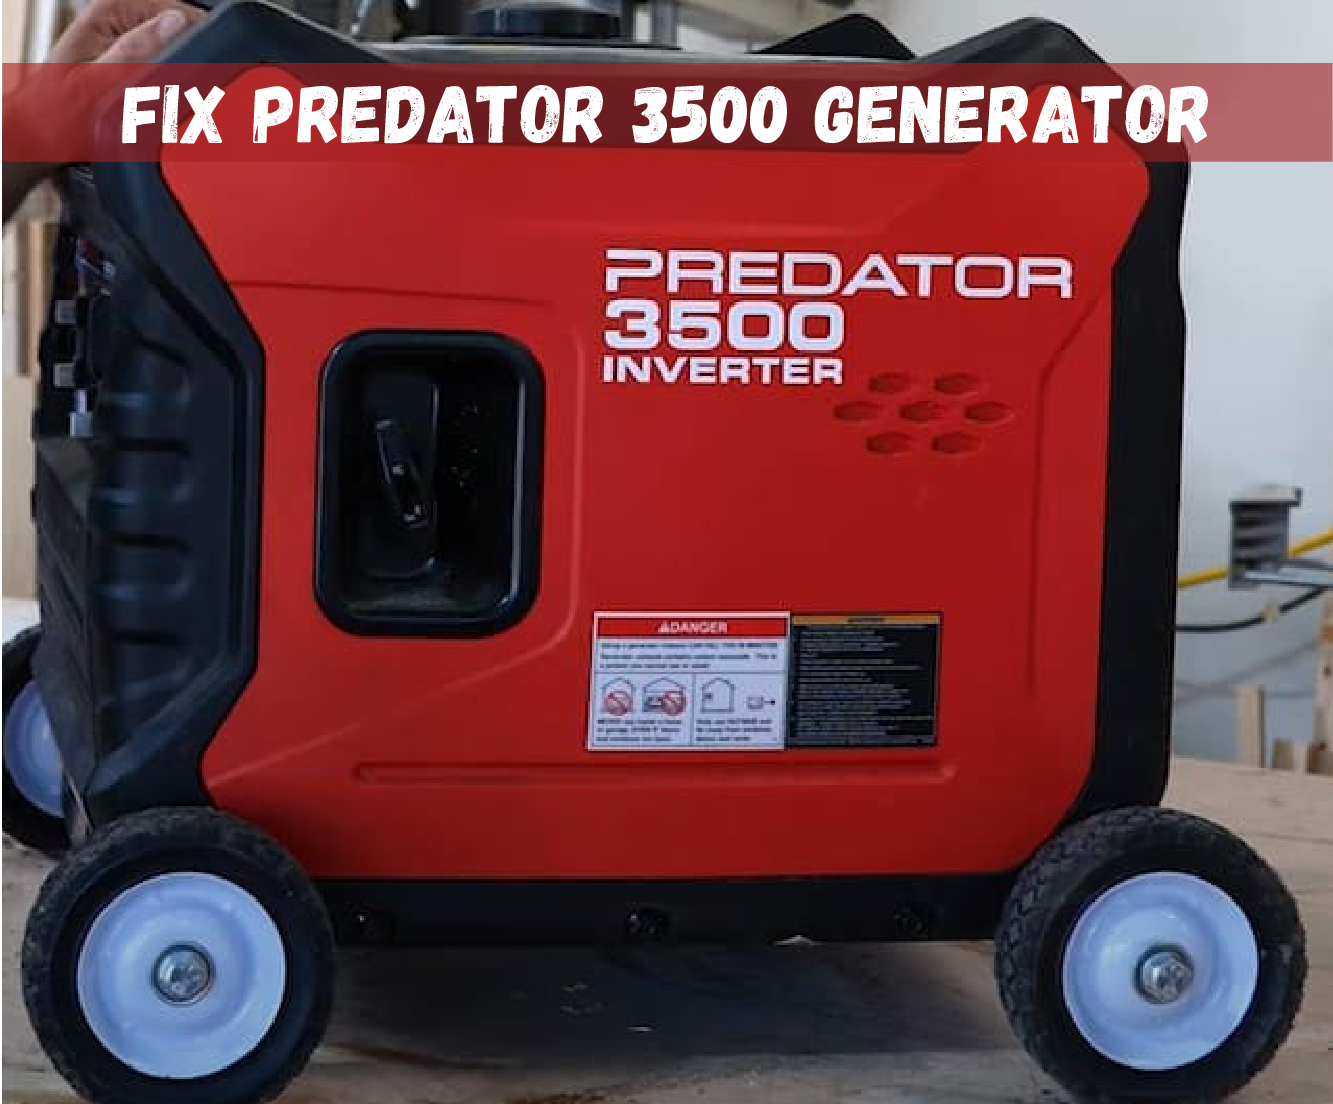 Predator 3500 Generator Is Not Working